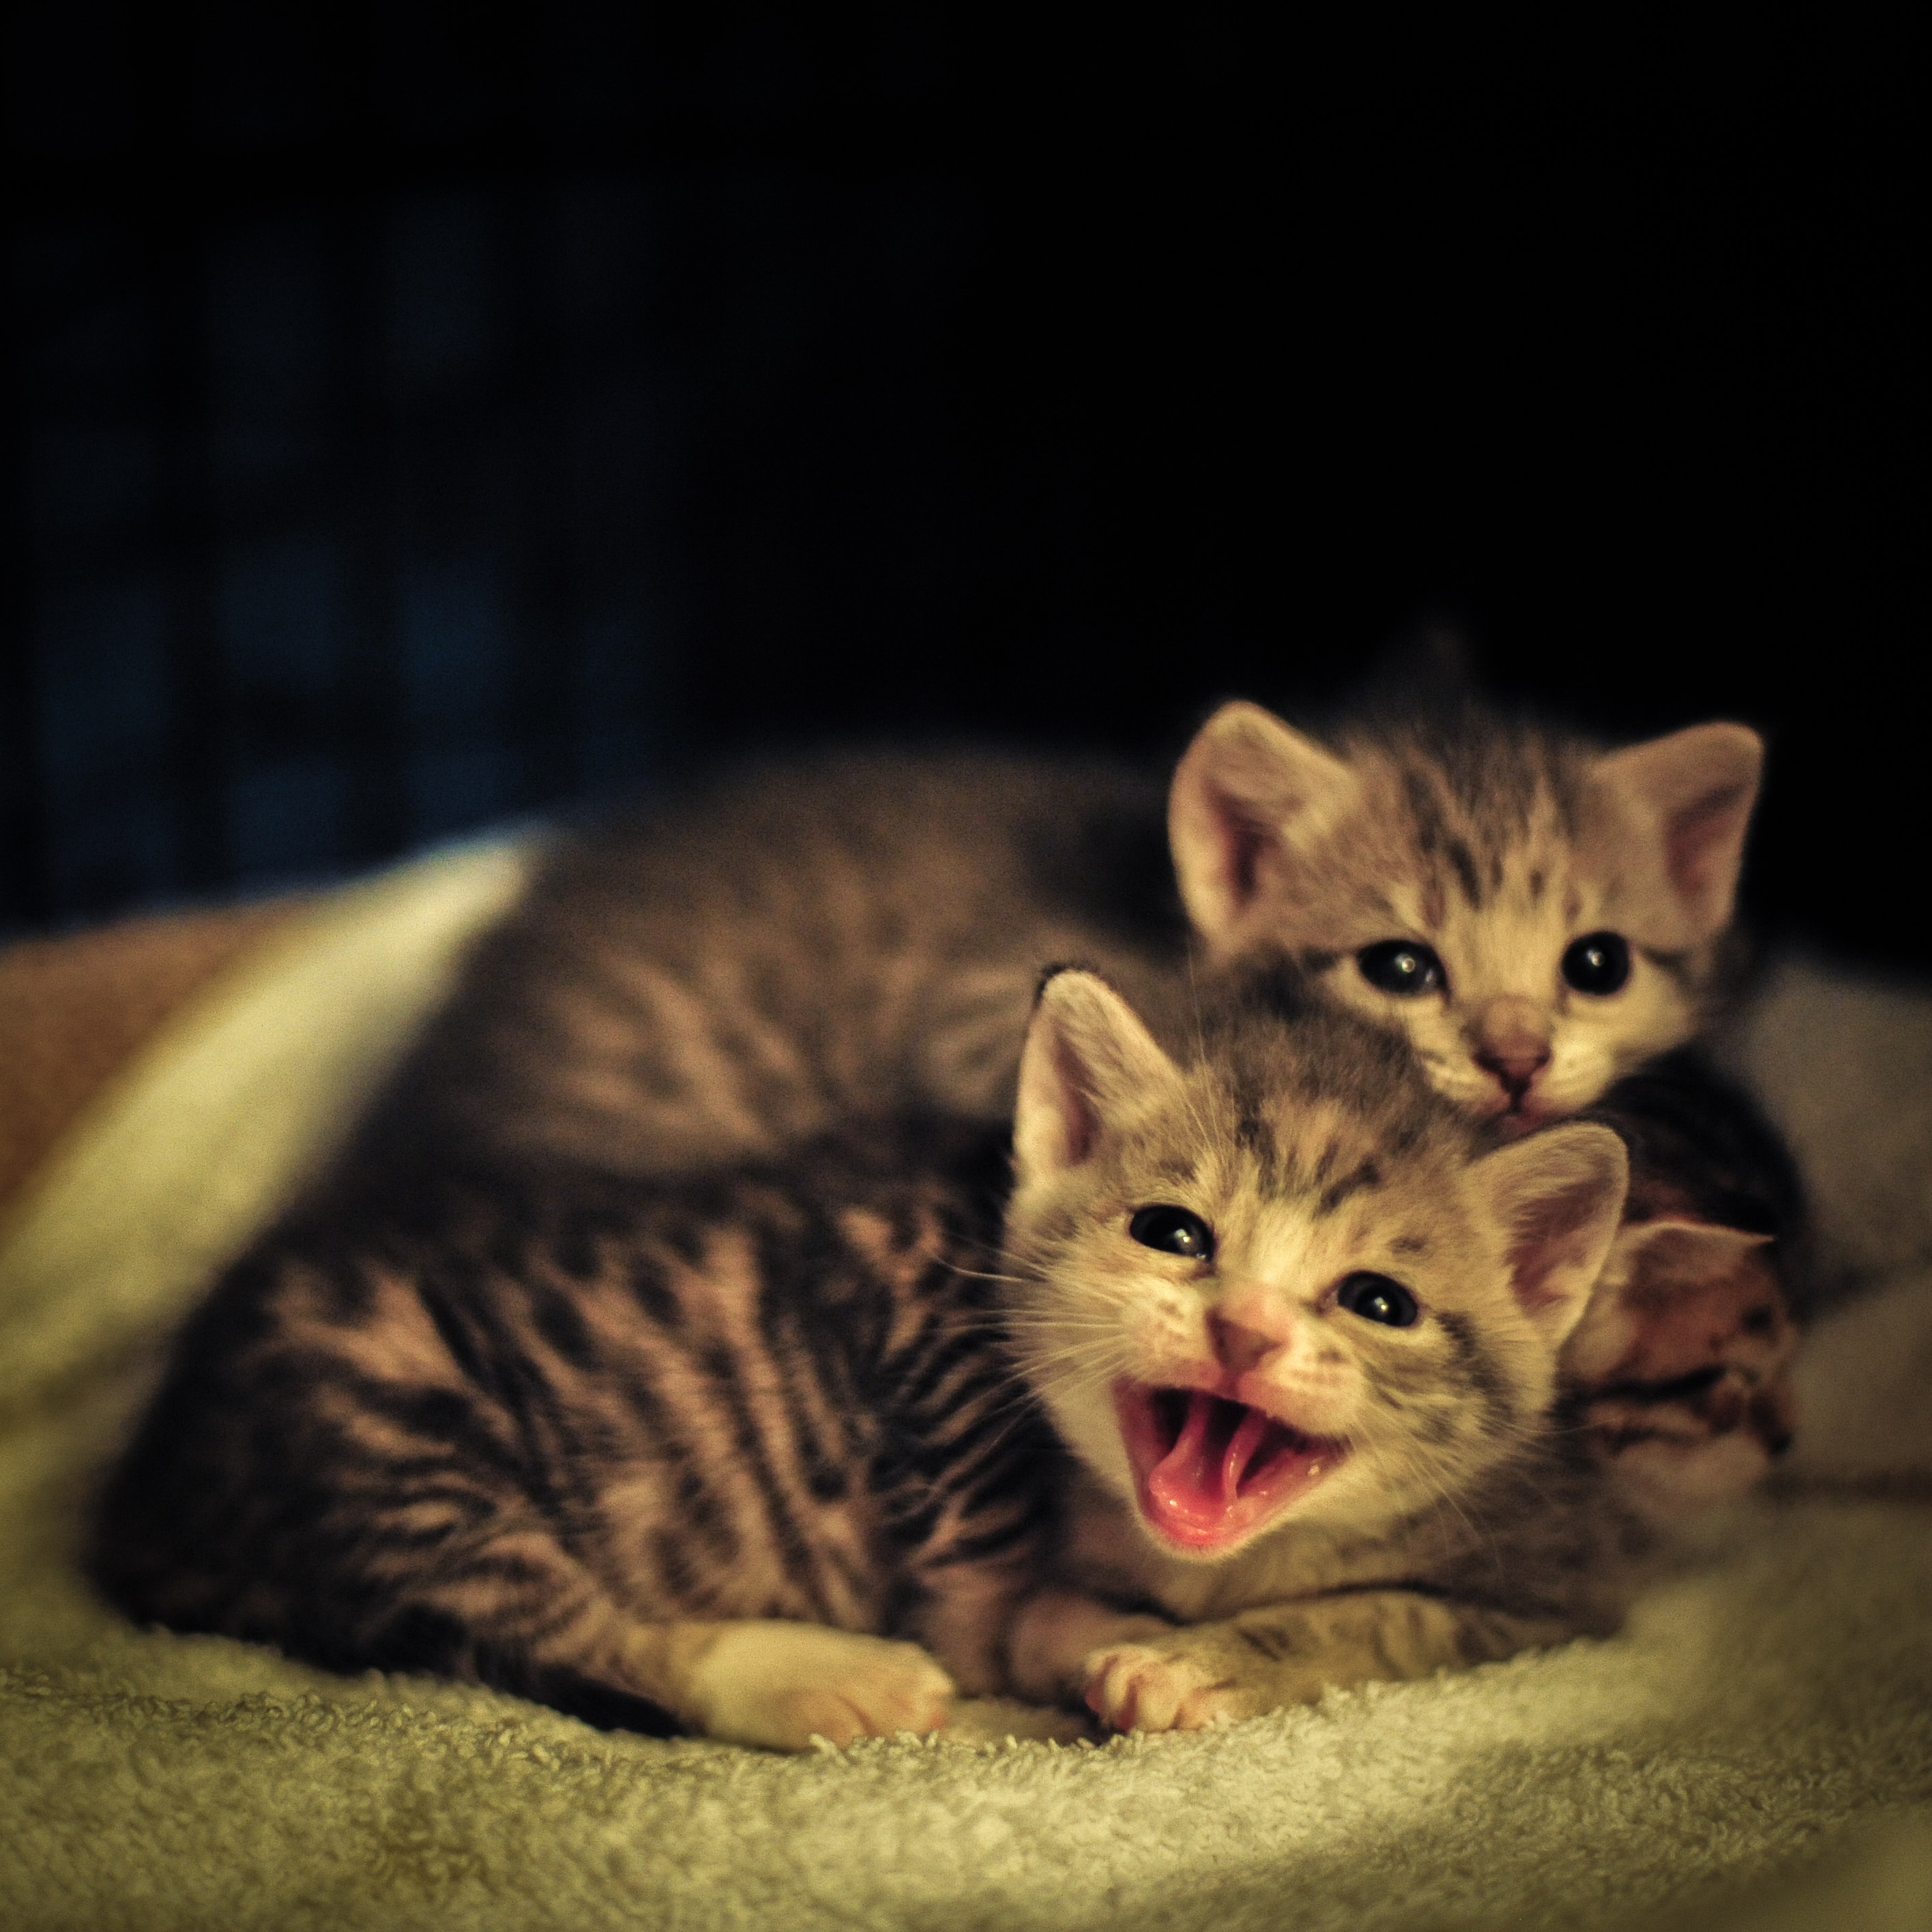 Ferocious looking kittens